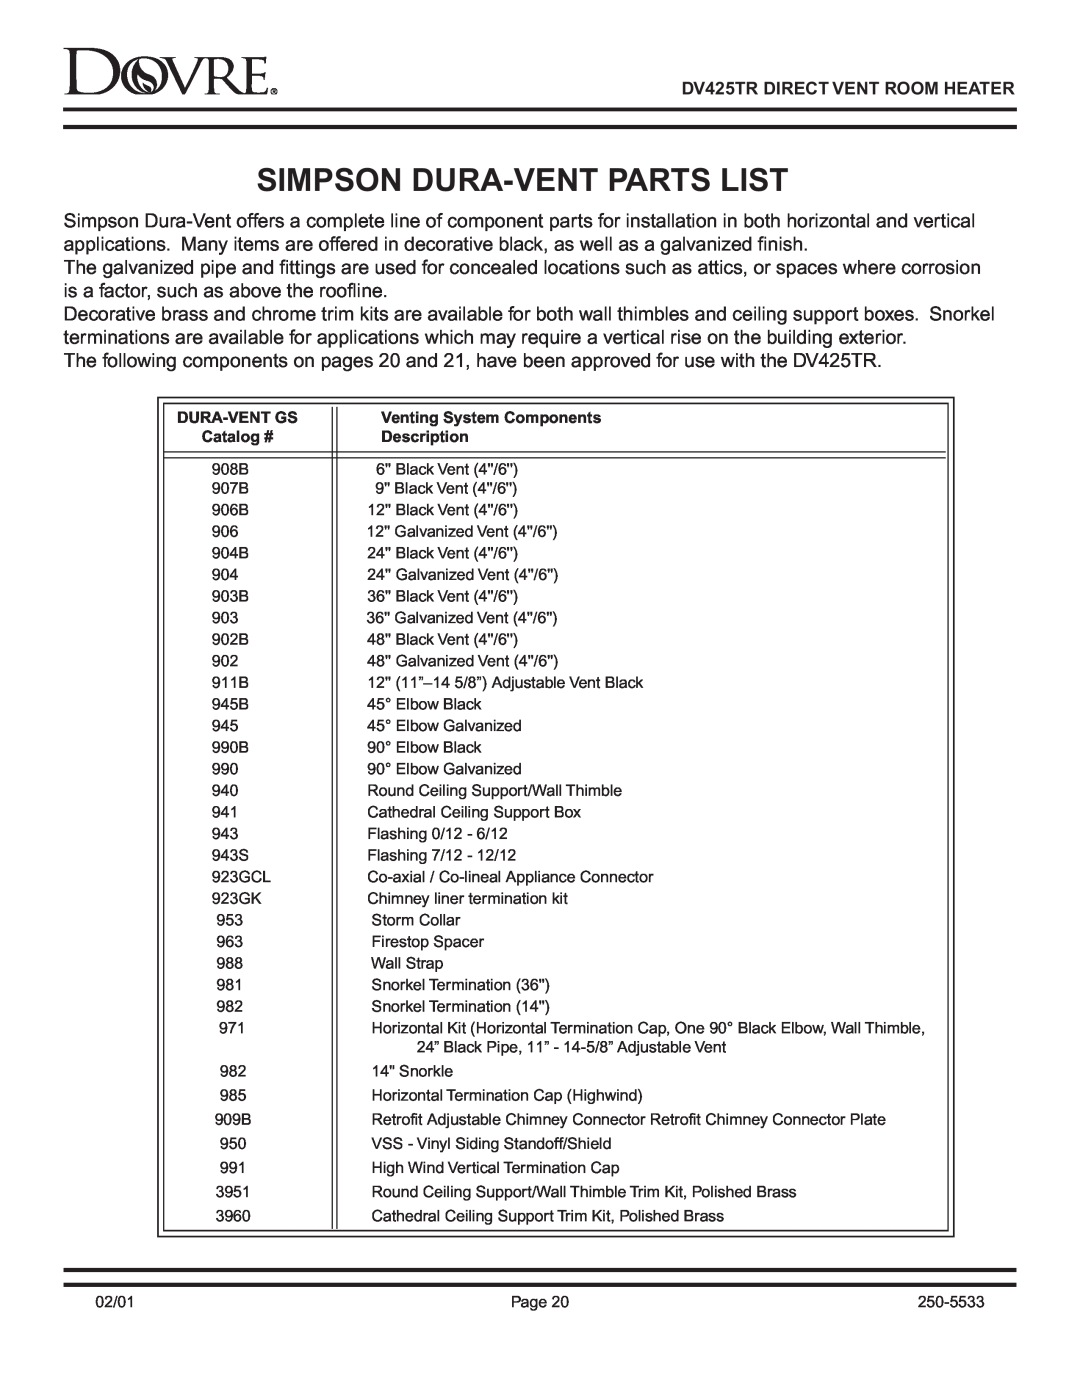 Sapphire Audio DV425TR Simpson Dura-Ventparts List, Dura-Ventgs, Venting System Components, Catalog #, Description 